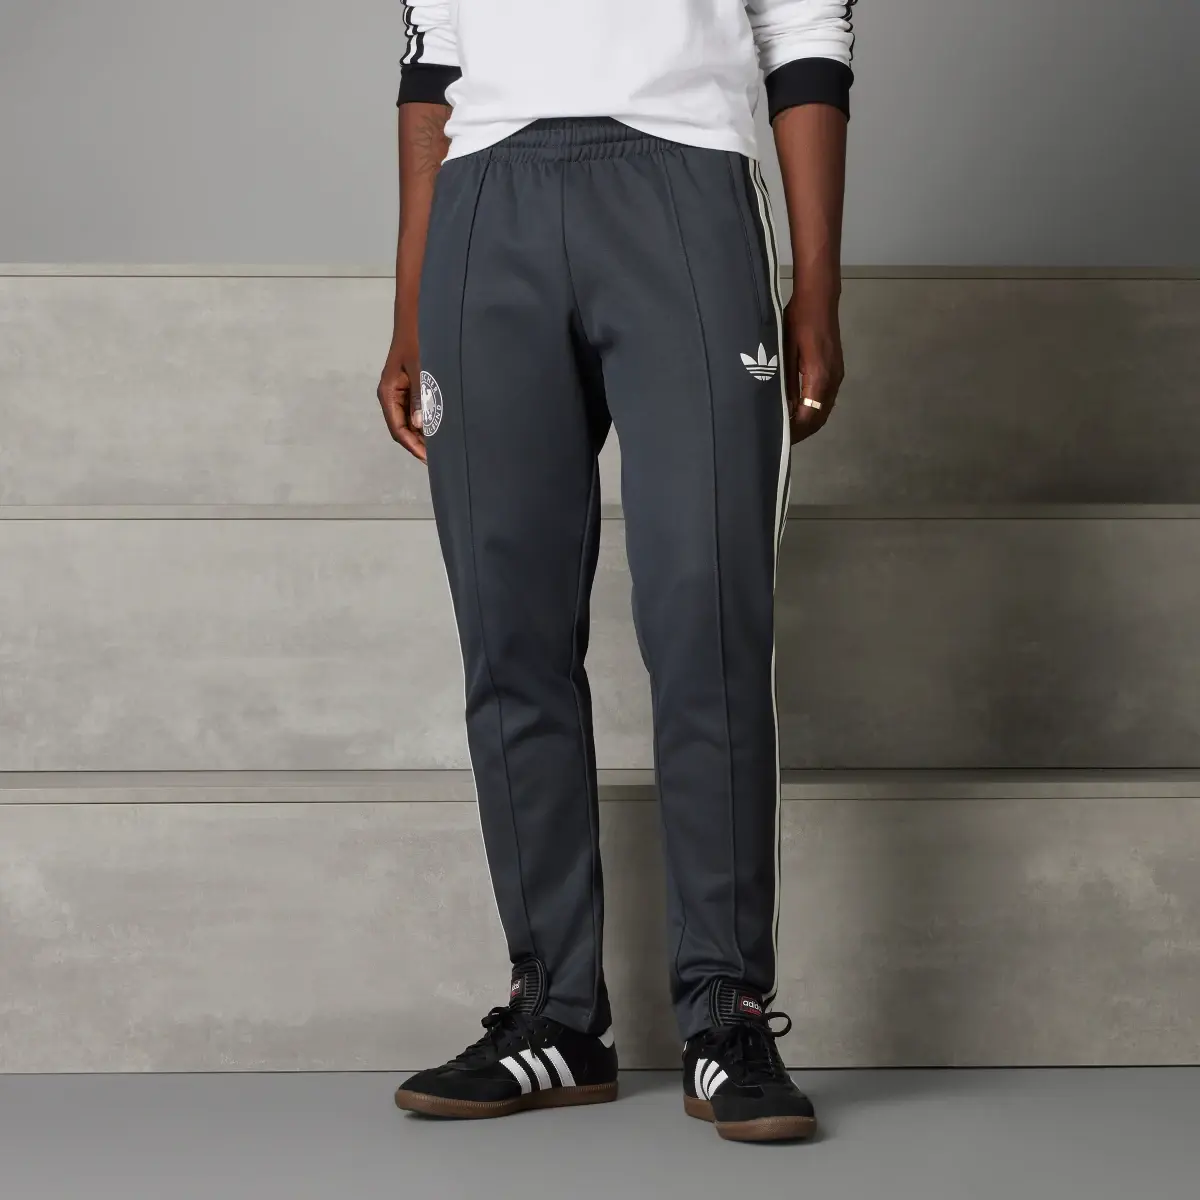 Adidas Pantalon de survêtement Allemagne Beckenbauer. 1